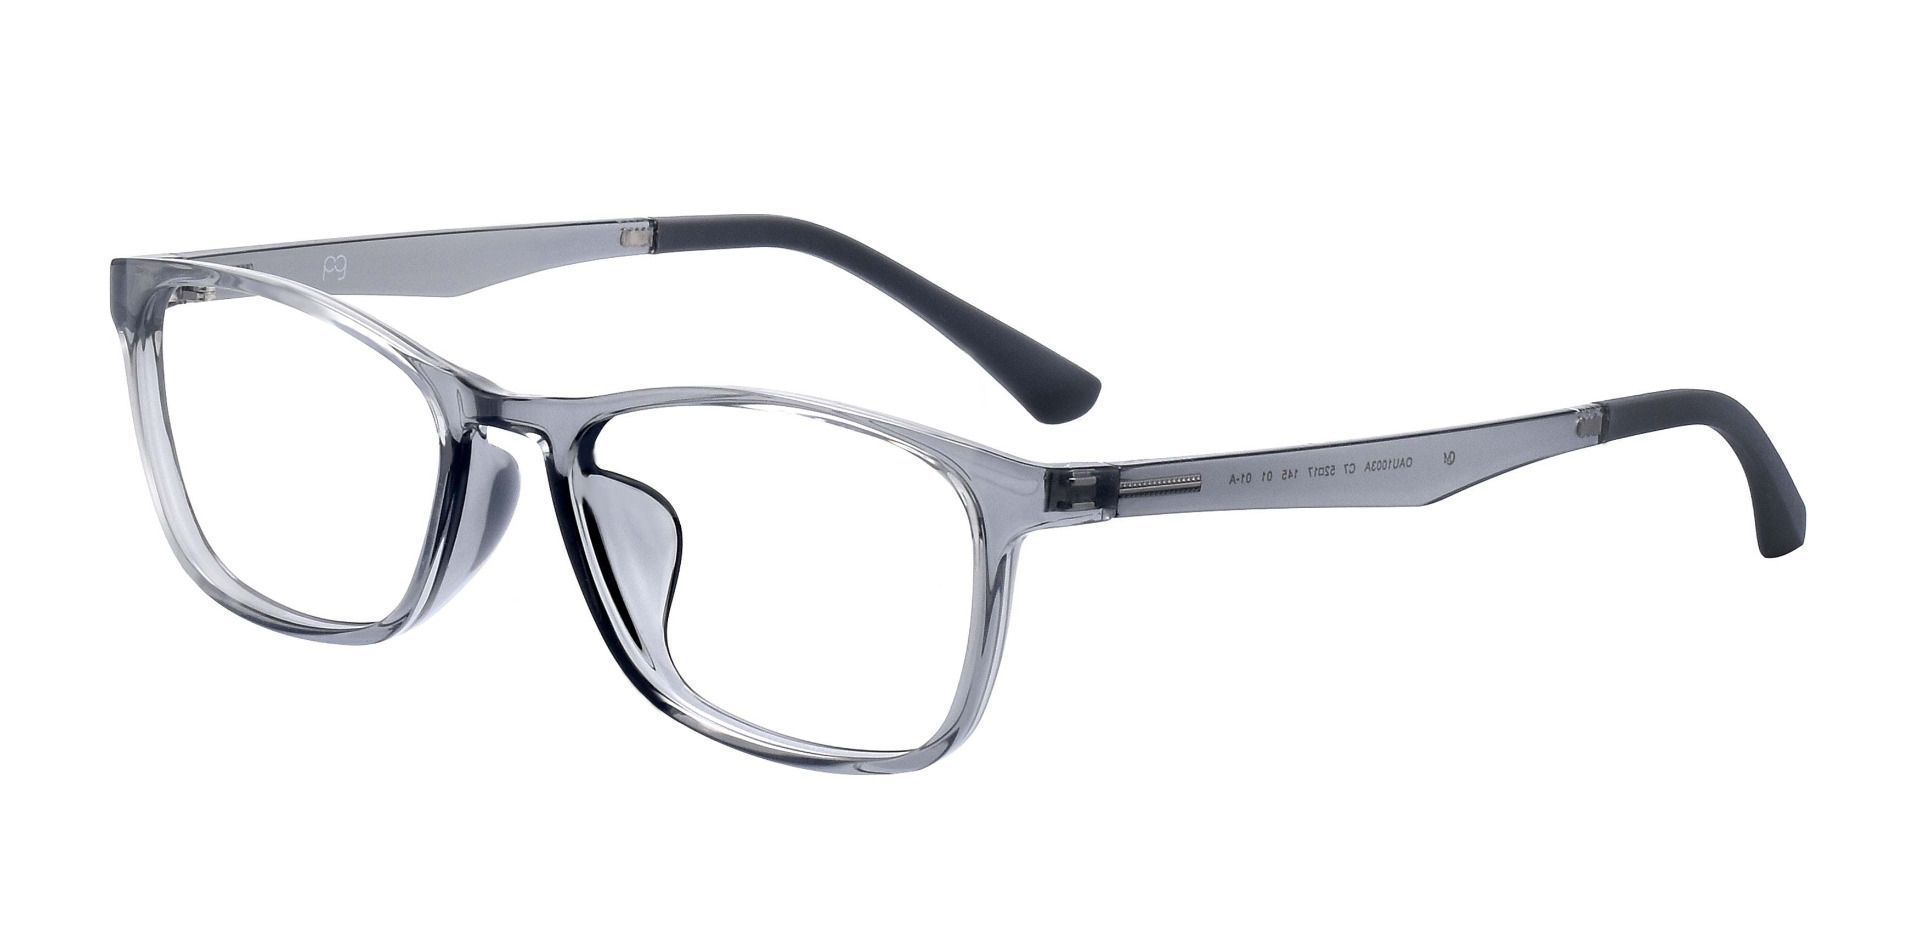 Merritt Rectangle Reading Glasses - Gray